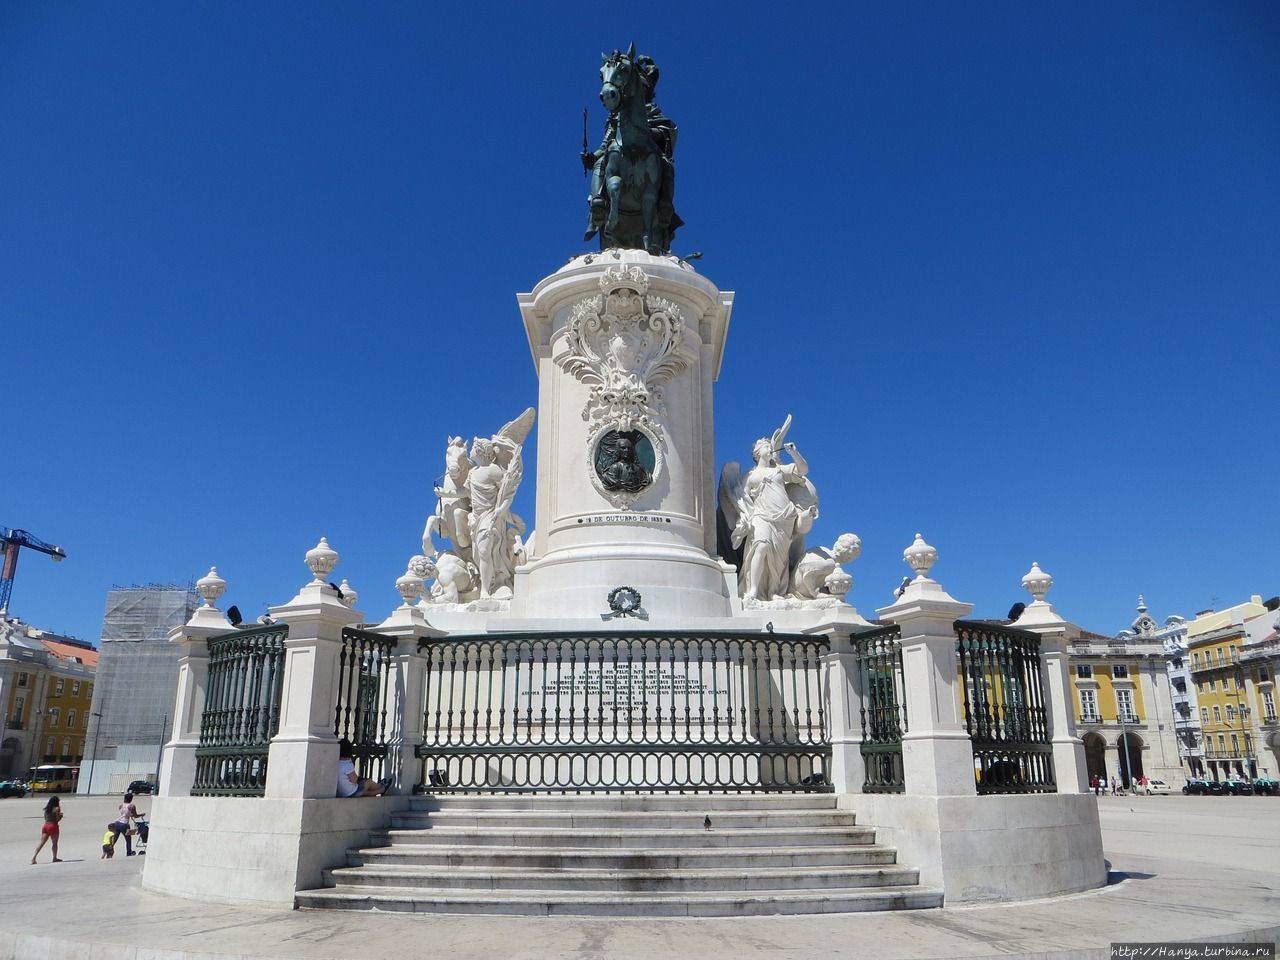 Конная статуя короля Д. Хосе I на Дворцовой площади Лиссабона. Из интернета